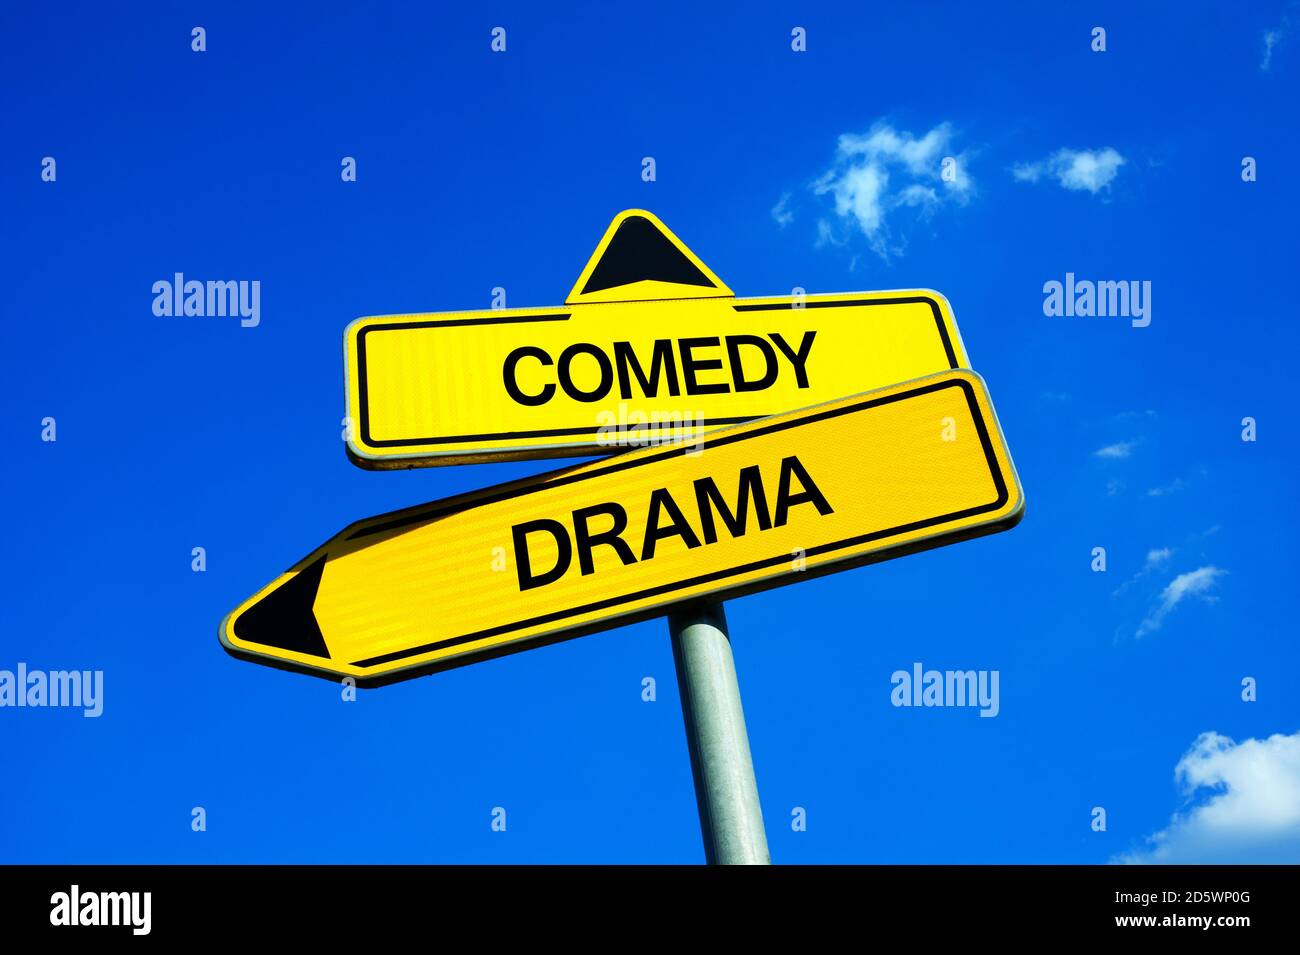 Commedia vs Drama - segnale stradale con due opzioni - scegliere argomento serio e pesante vs trama divertente e leggera di gioco in teatro o film in cin Foto Stock